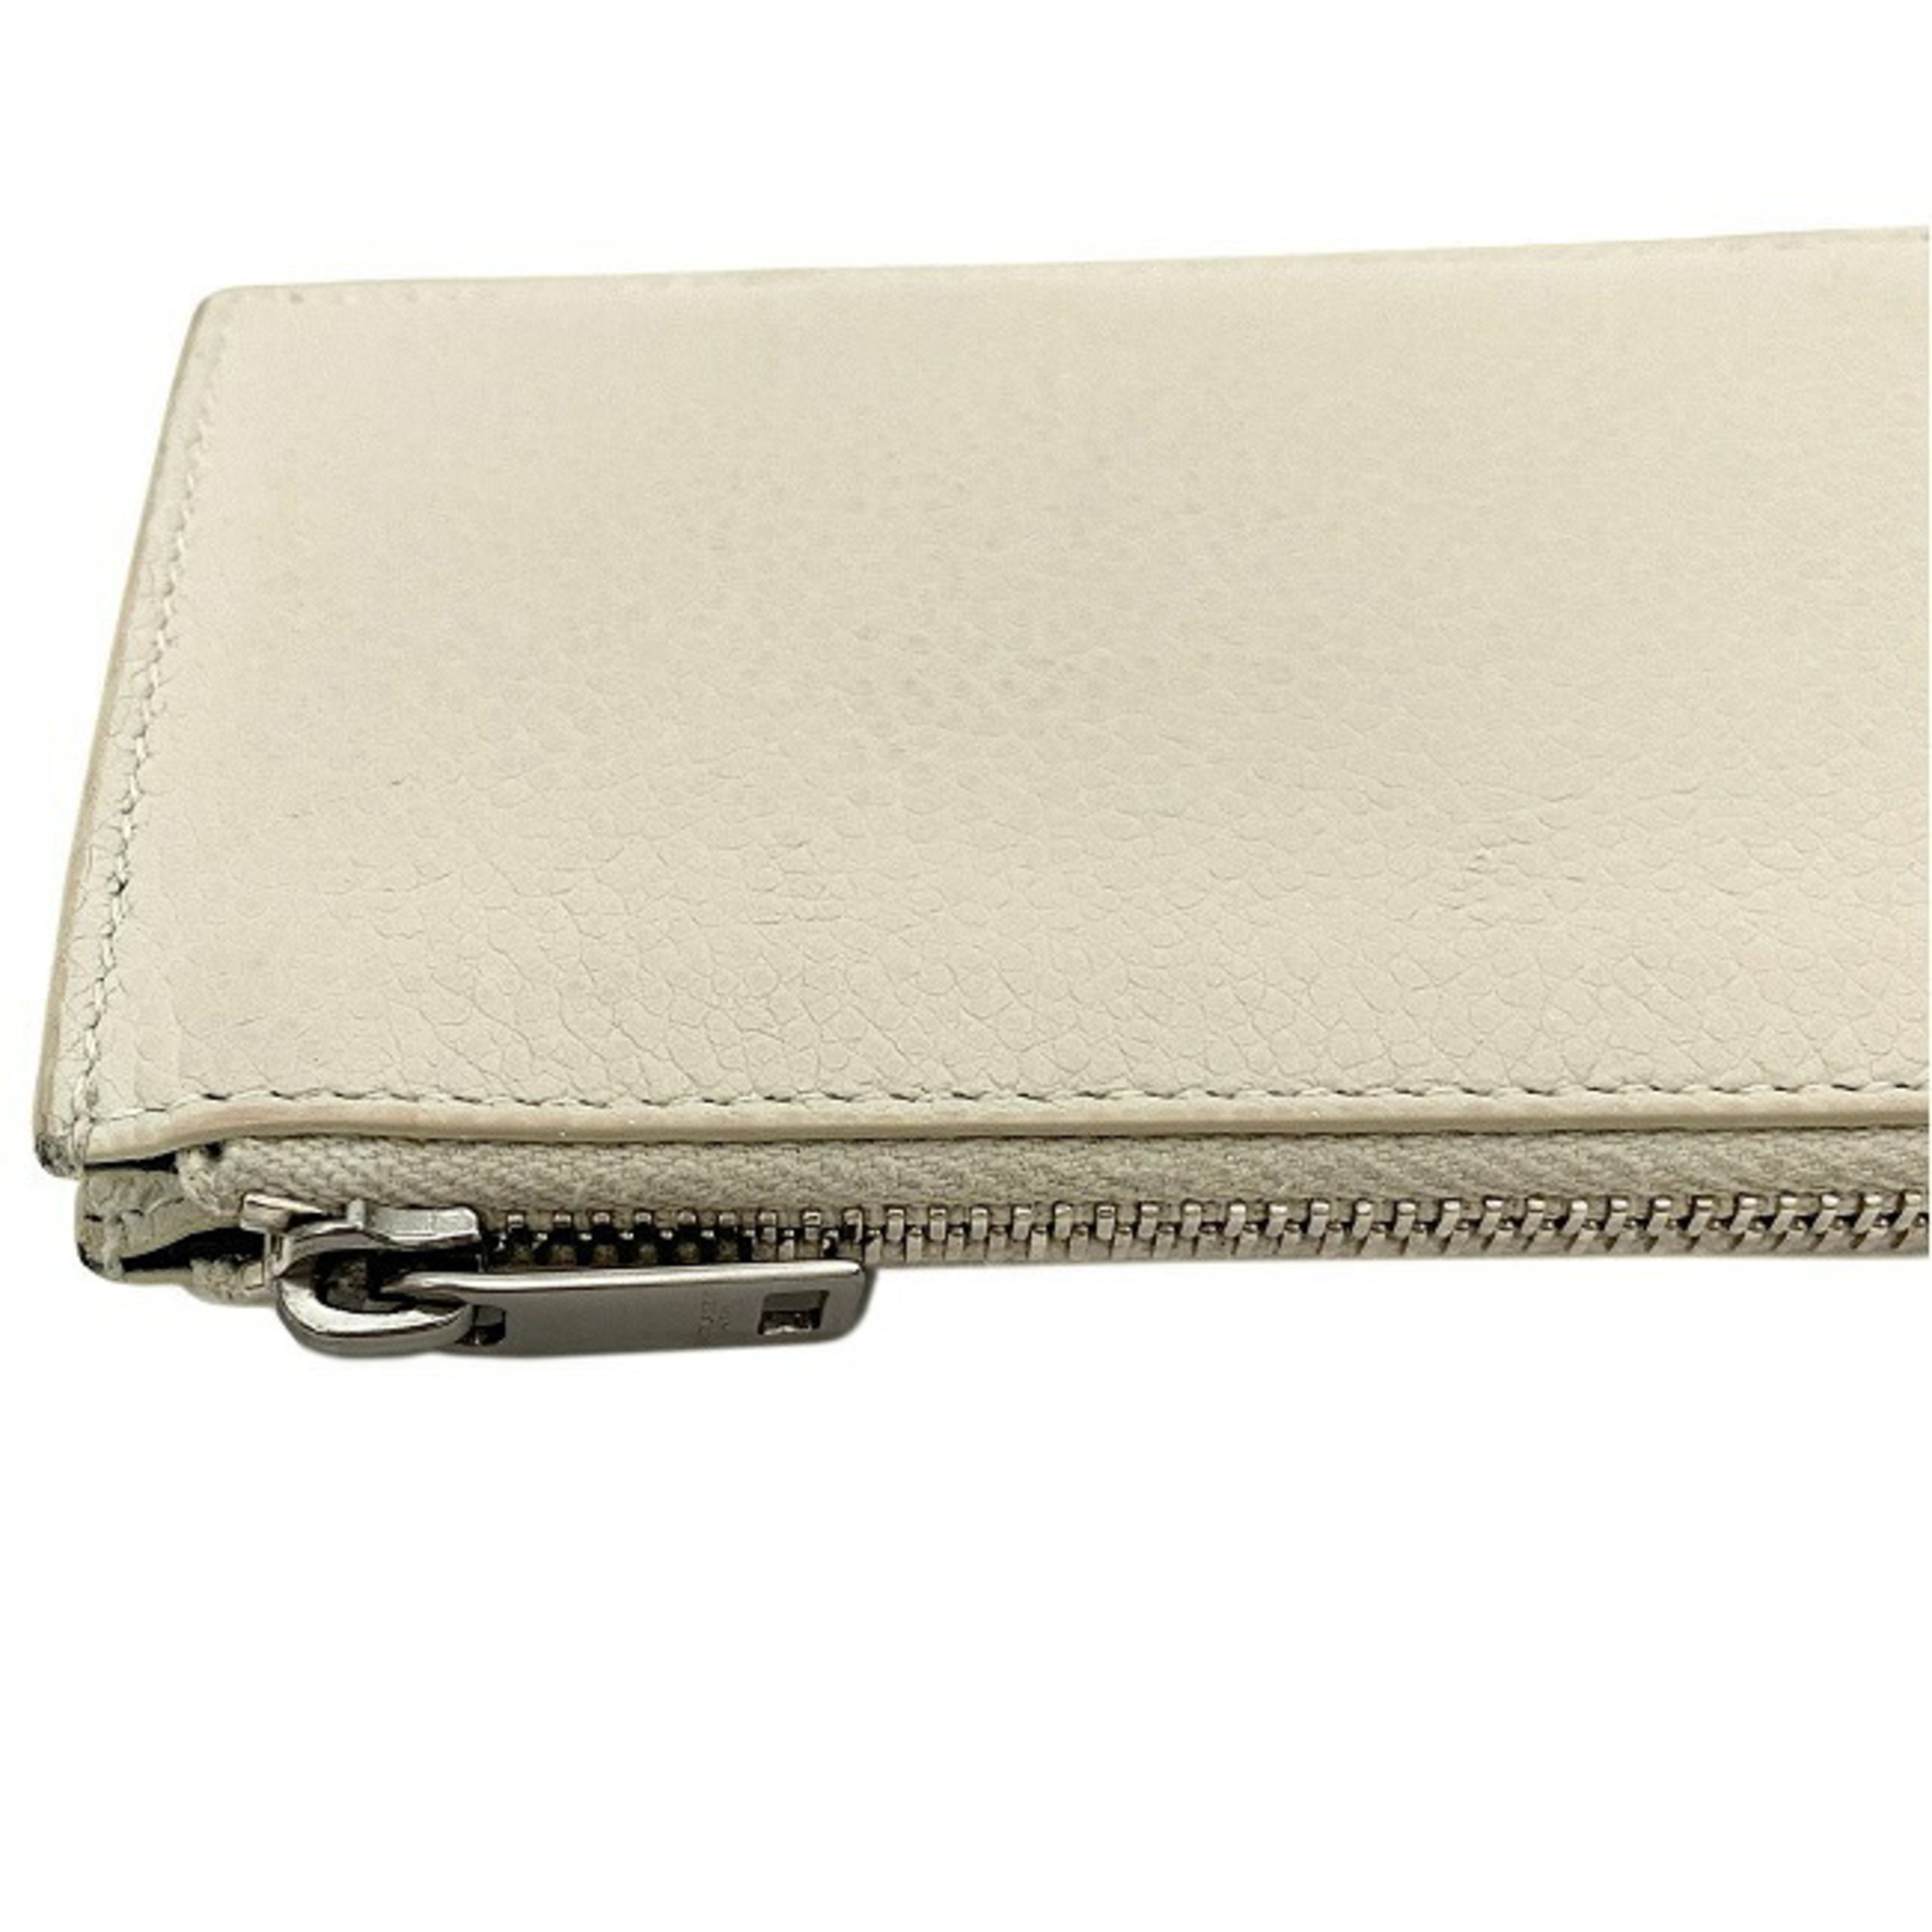 Saint Laurent card case gray beige silver 458583 coin leather SAINT LAURENT PARIS holder purse wallet ladies